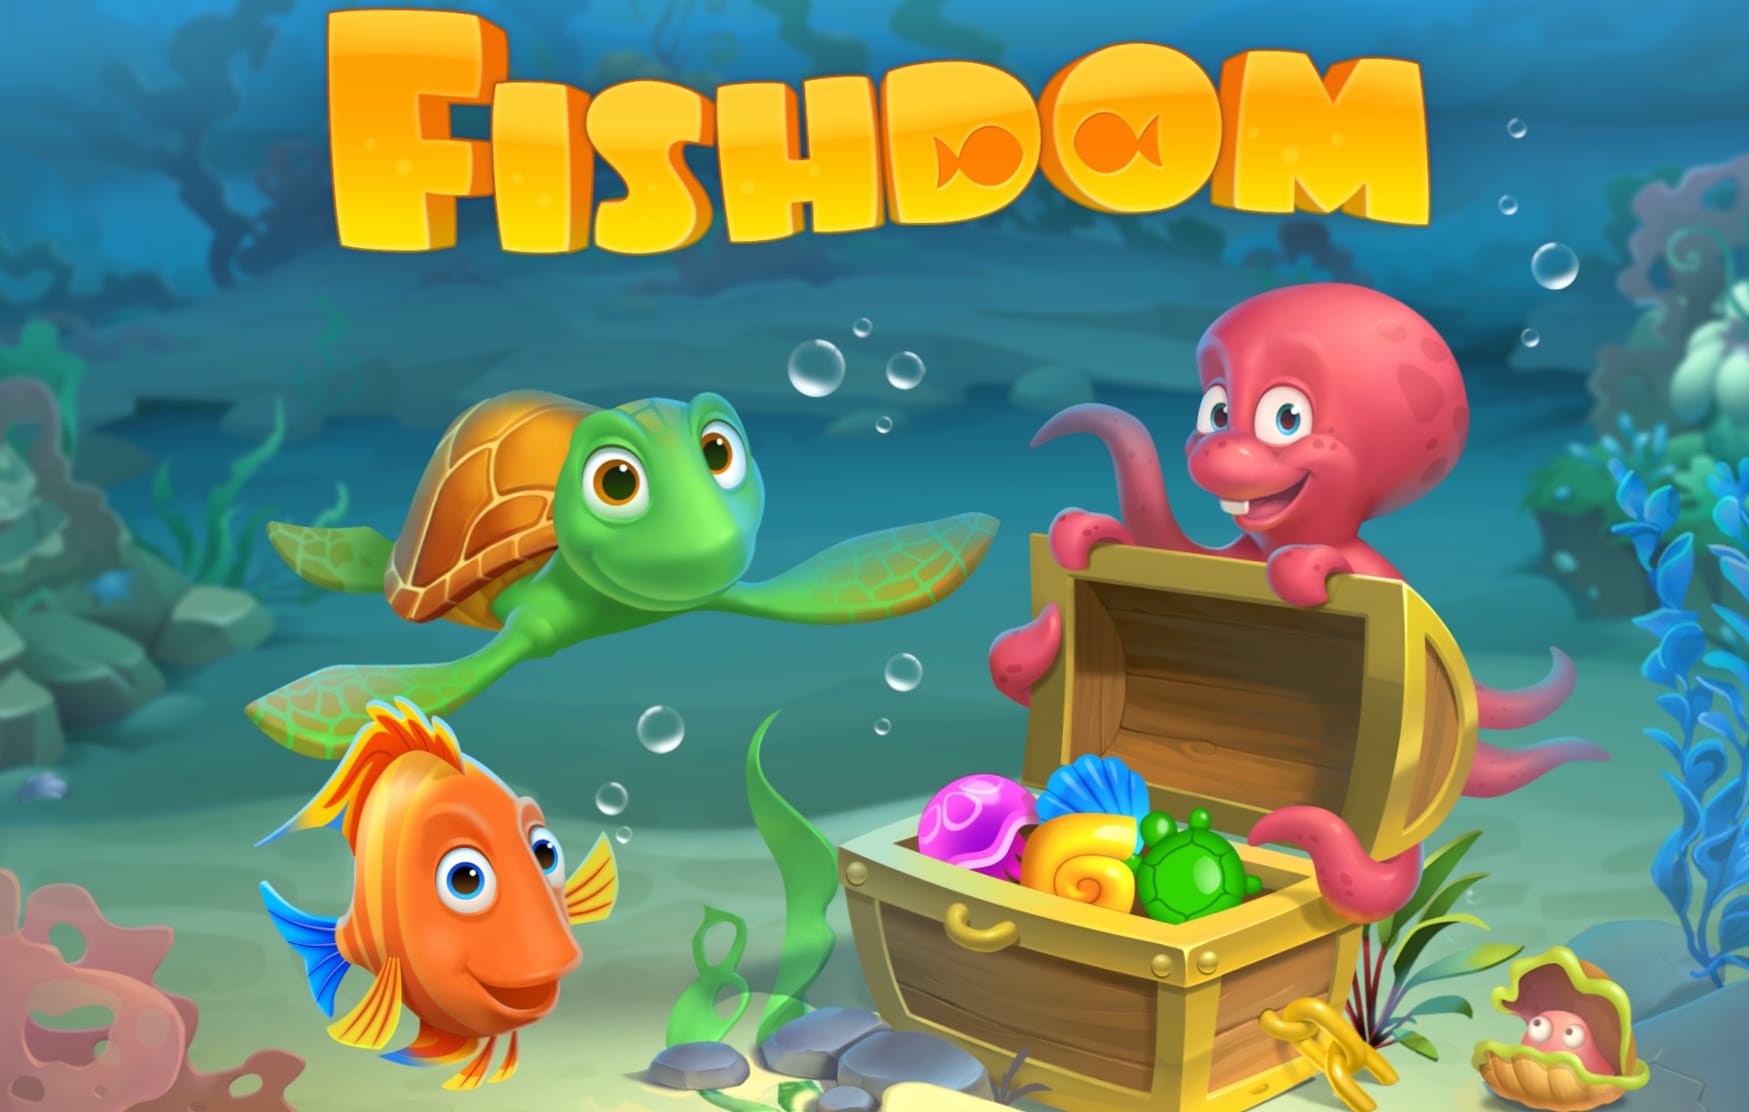 Fishdom at 1024 x 1024 iPad size wallpapers HD quality